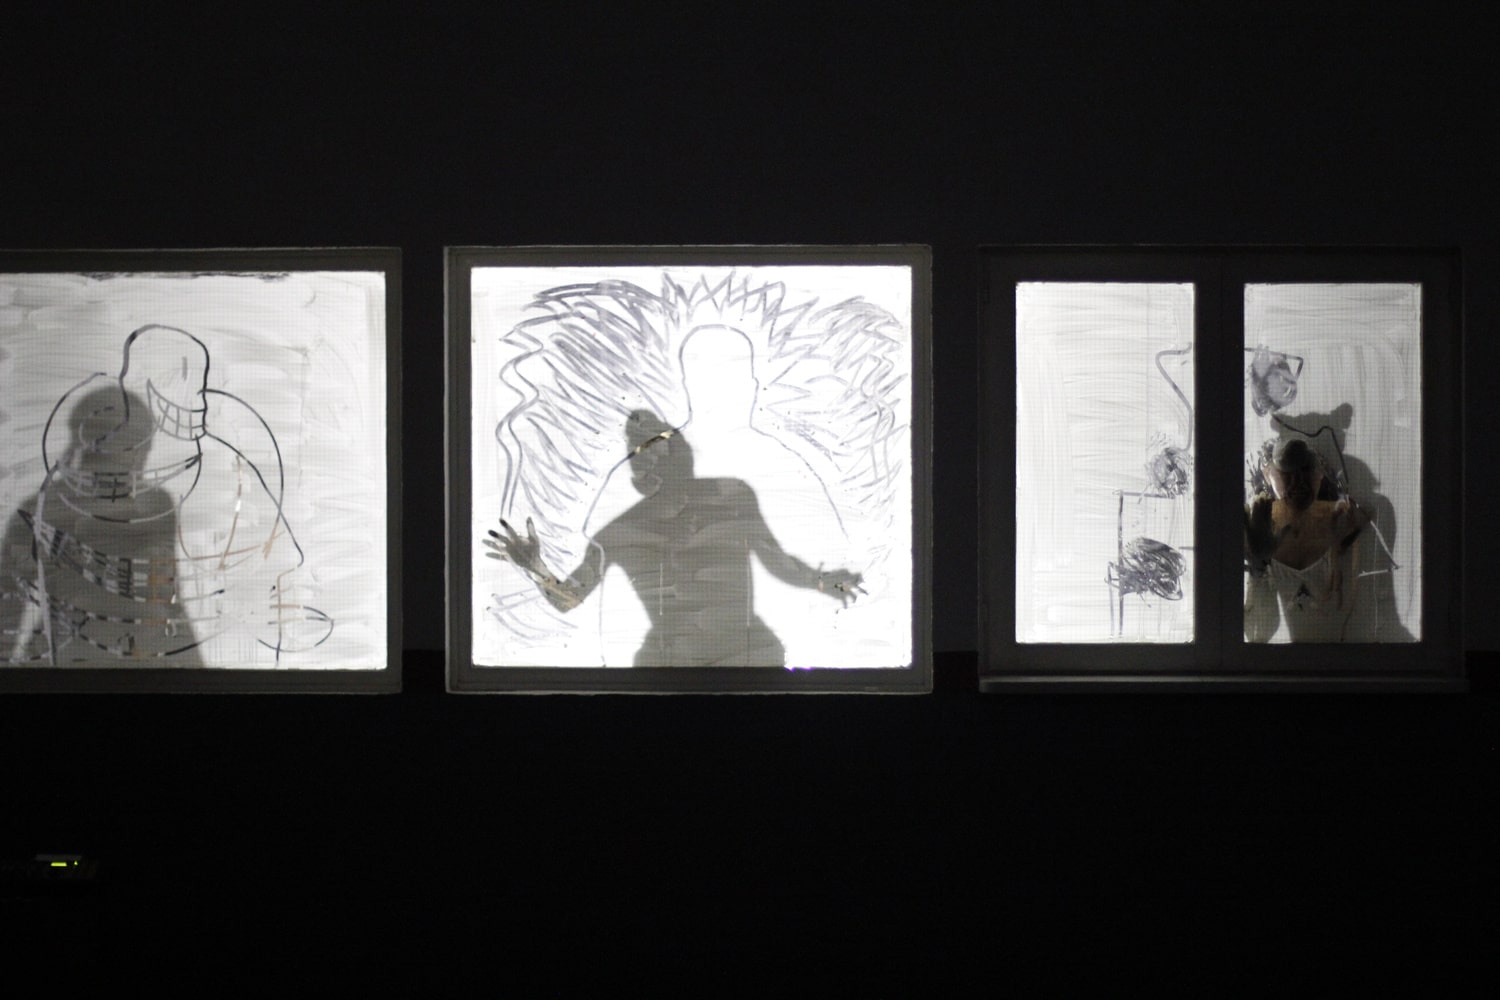 Shadows of three performers during Atrabilis by Salon de los Invisibles